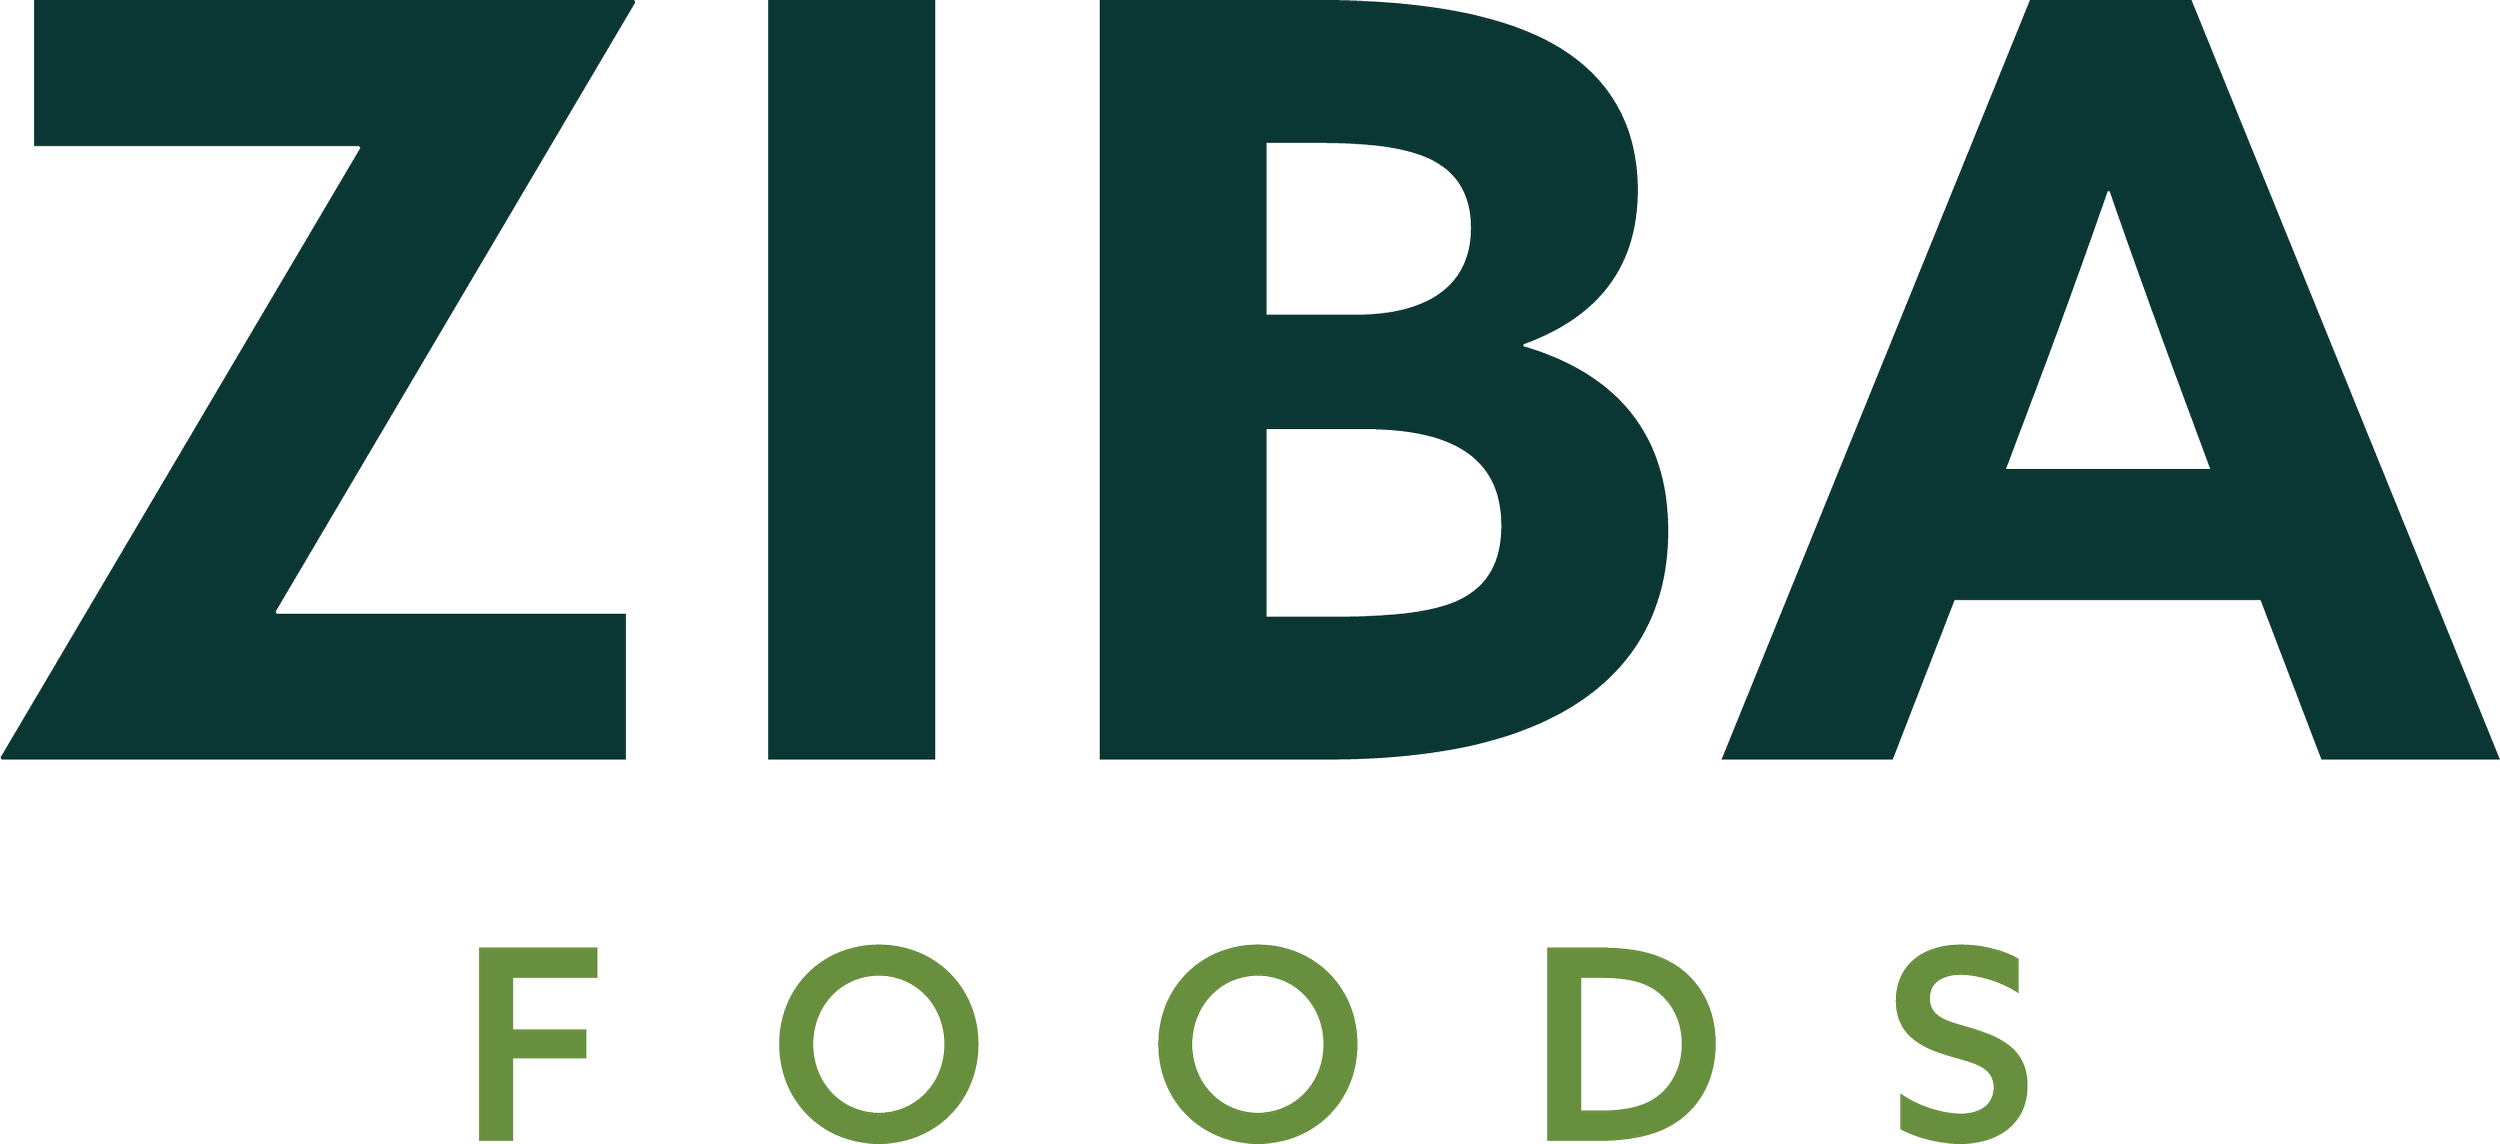 Ziba Foods LLC - Certified B Corporation in Afghanistan